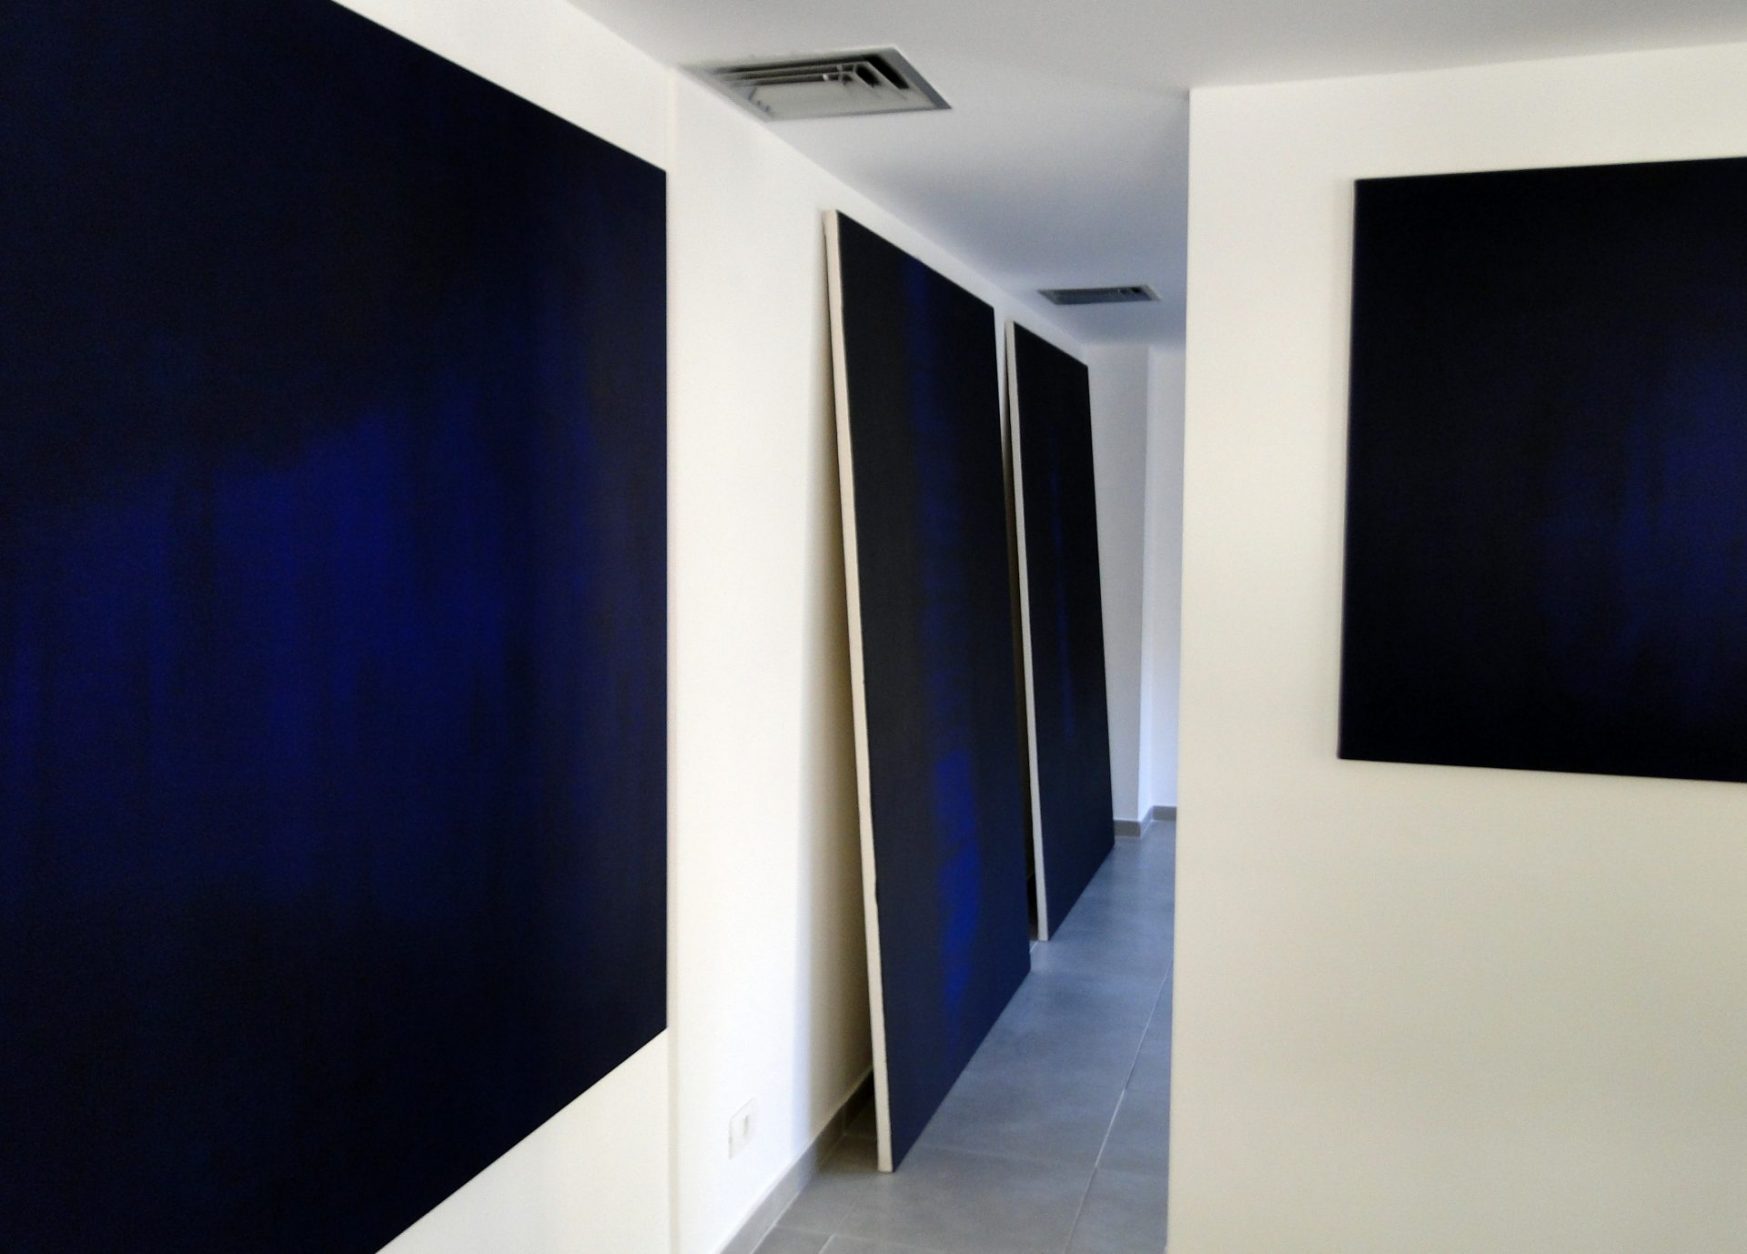 No Limits na Galeria ÖKO Arte Contemporânea (2013)